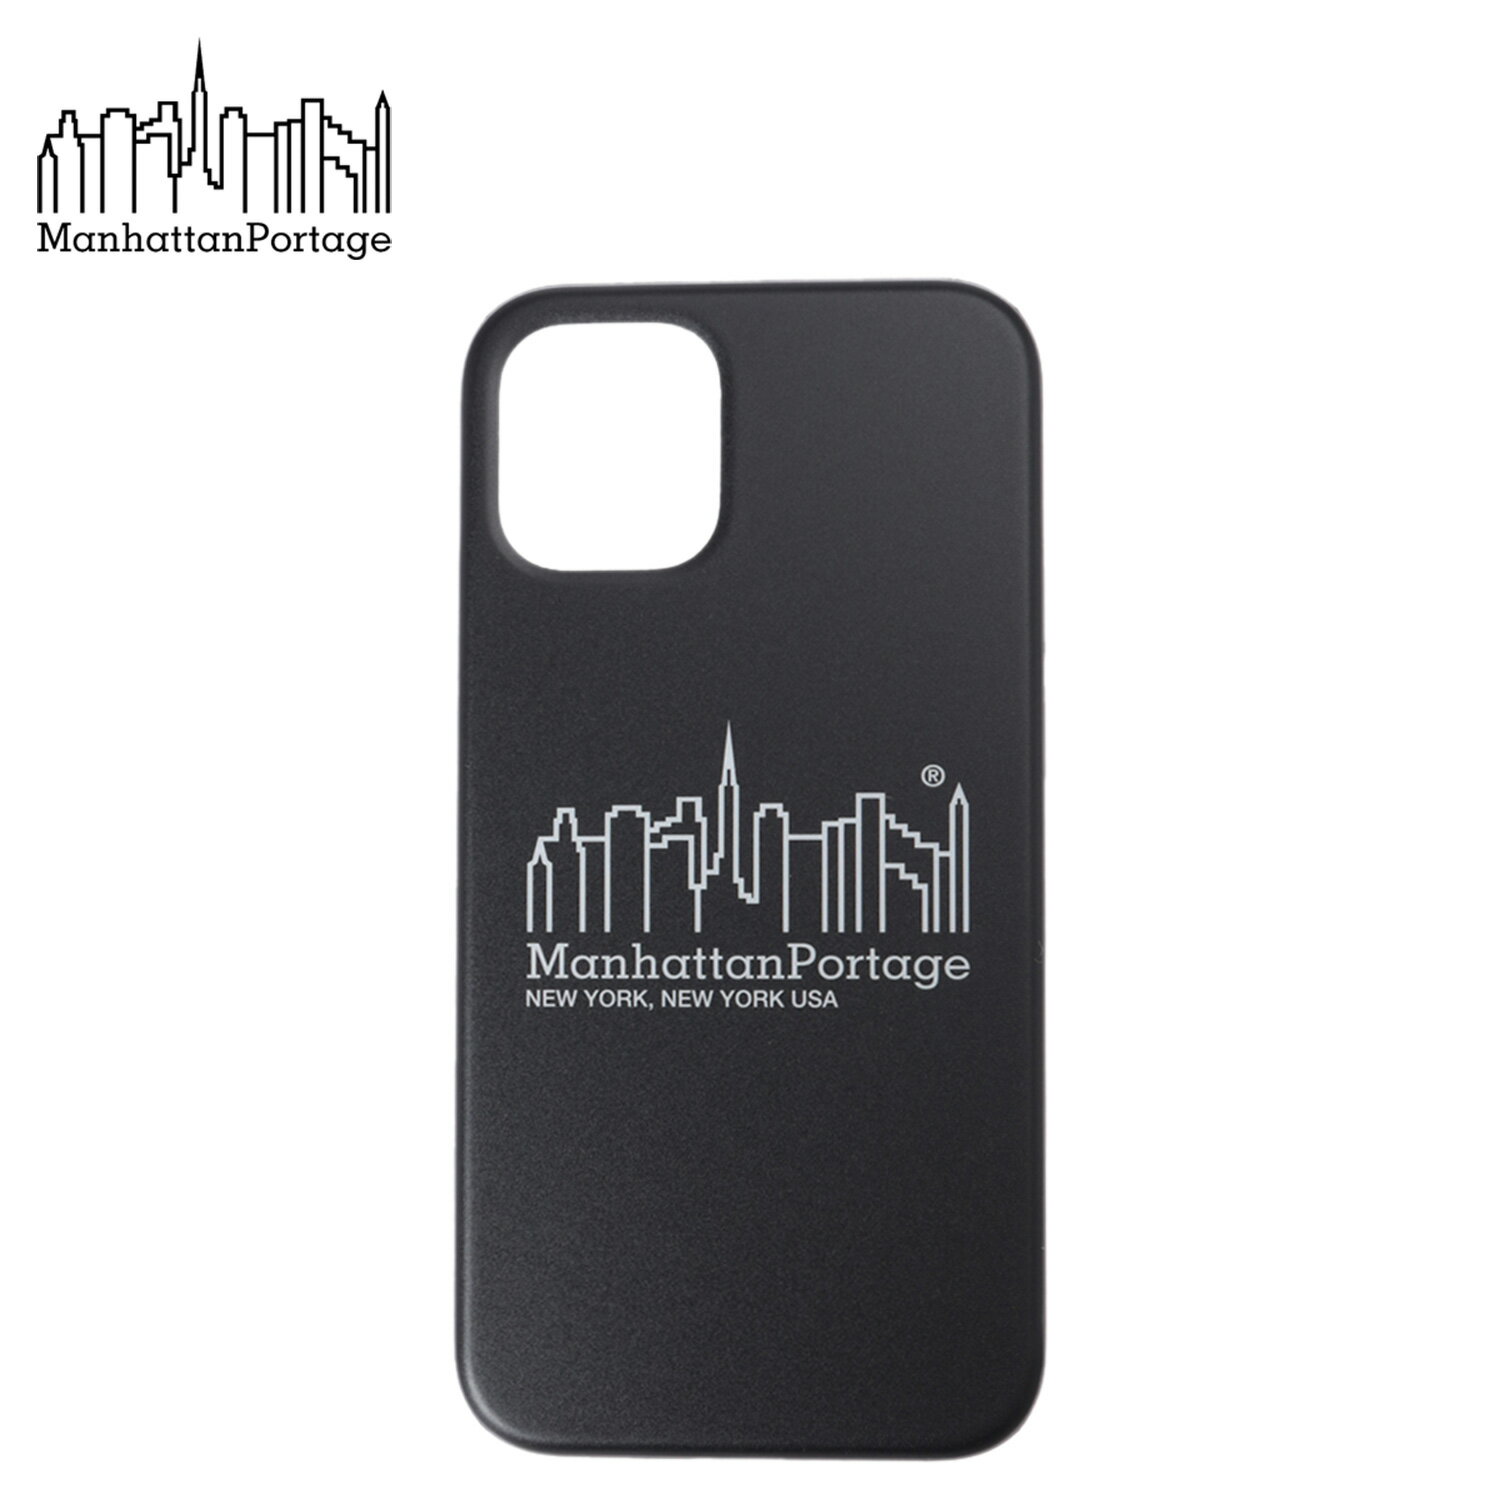 Manhattan Portage マンハッタンポーテージ iPhone 12mini スマホケース 携帯 アイフォン カバー メンズ レディース HYBRID IML BACK CASE ブラック 黒 iP2054-MP04 【 ネコポス可 】